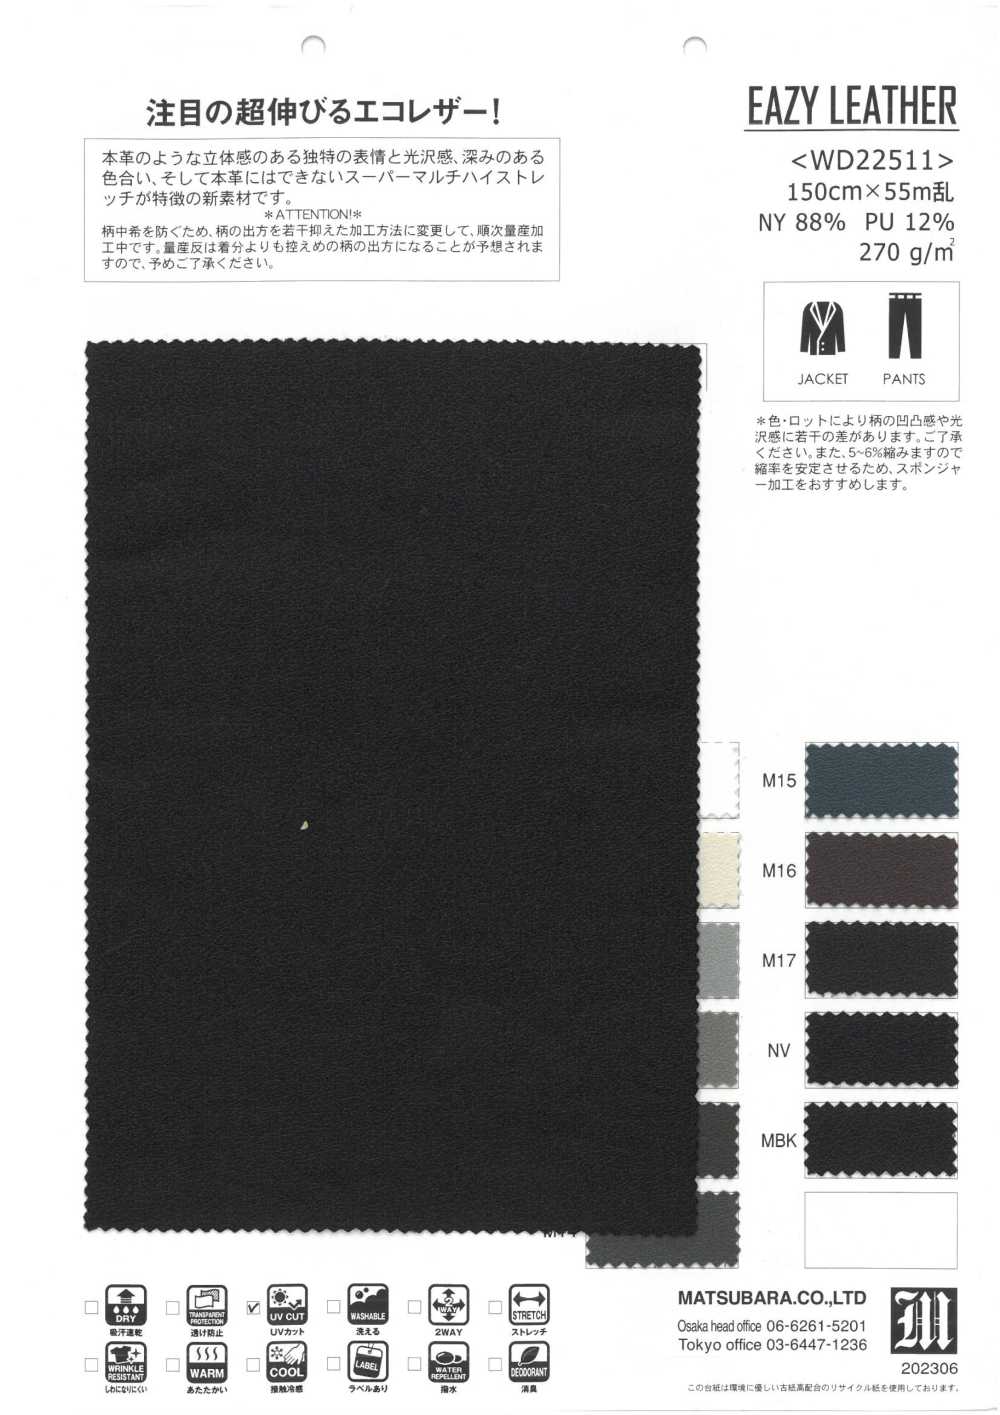 WD22511 EAZY LEATHER[Textile / Fabric] Matsubara